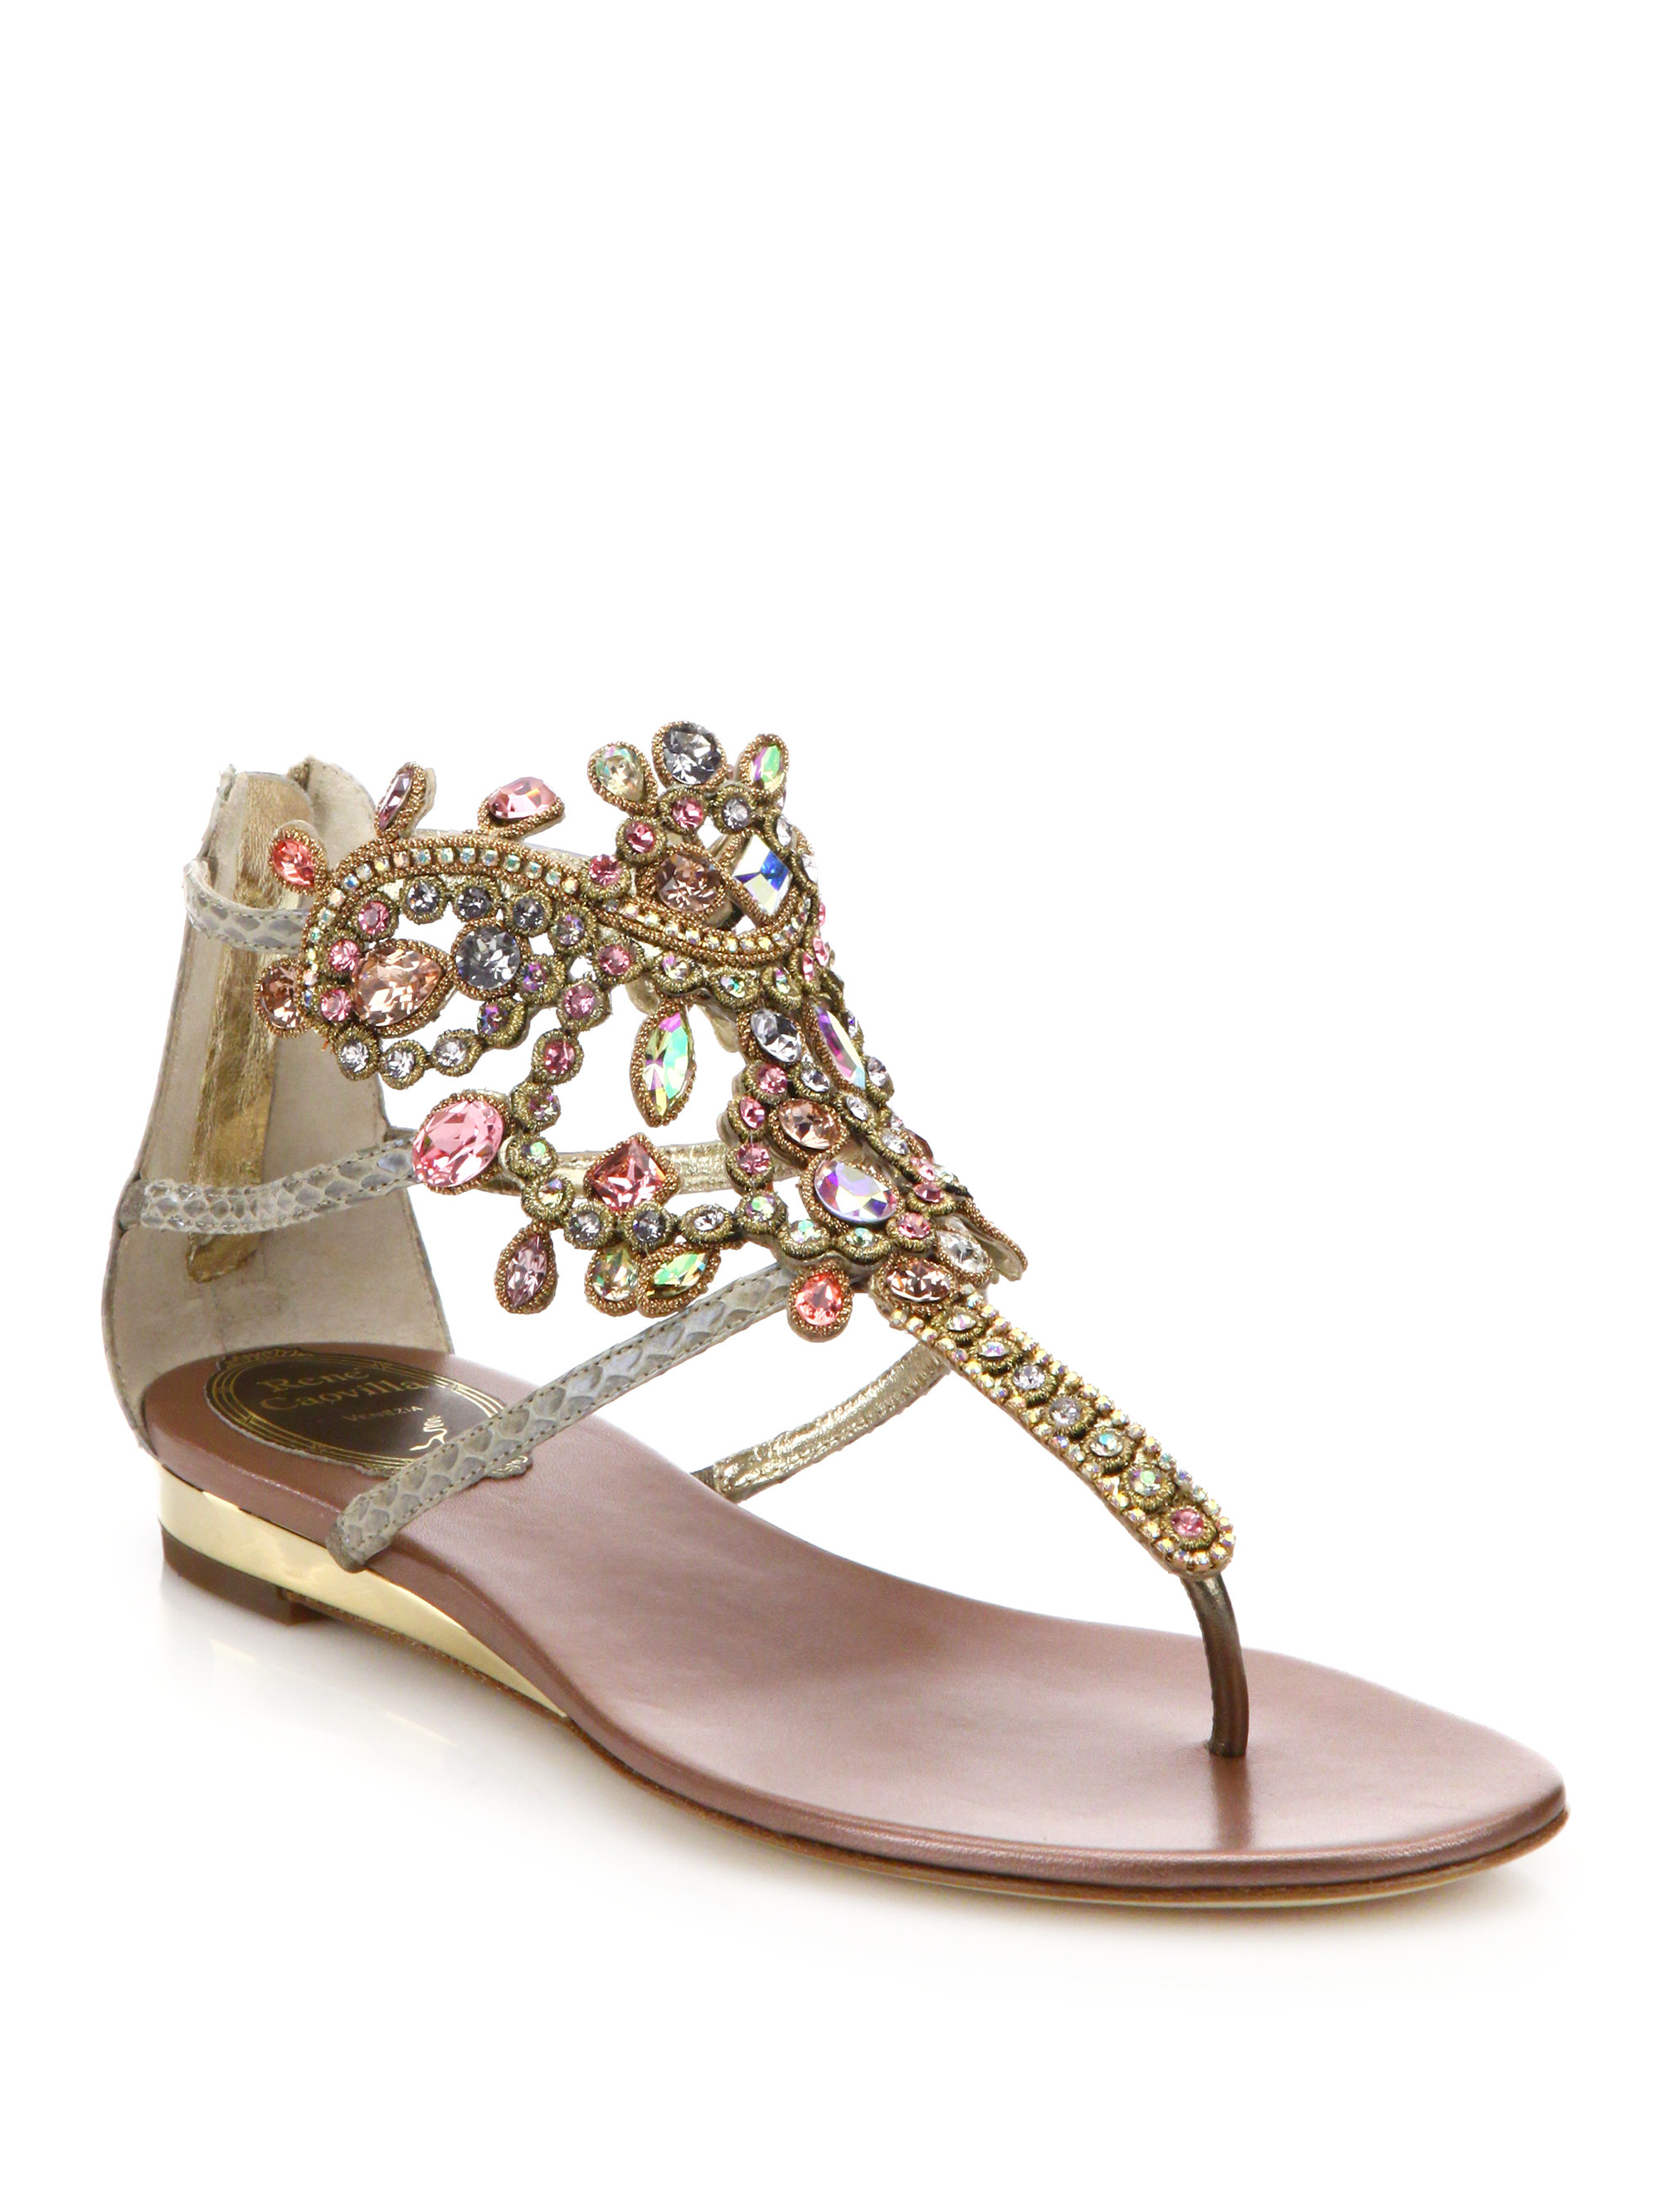 Rene caovilla Swarovski Crystal-embellished Snakeskin Sandals in ...